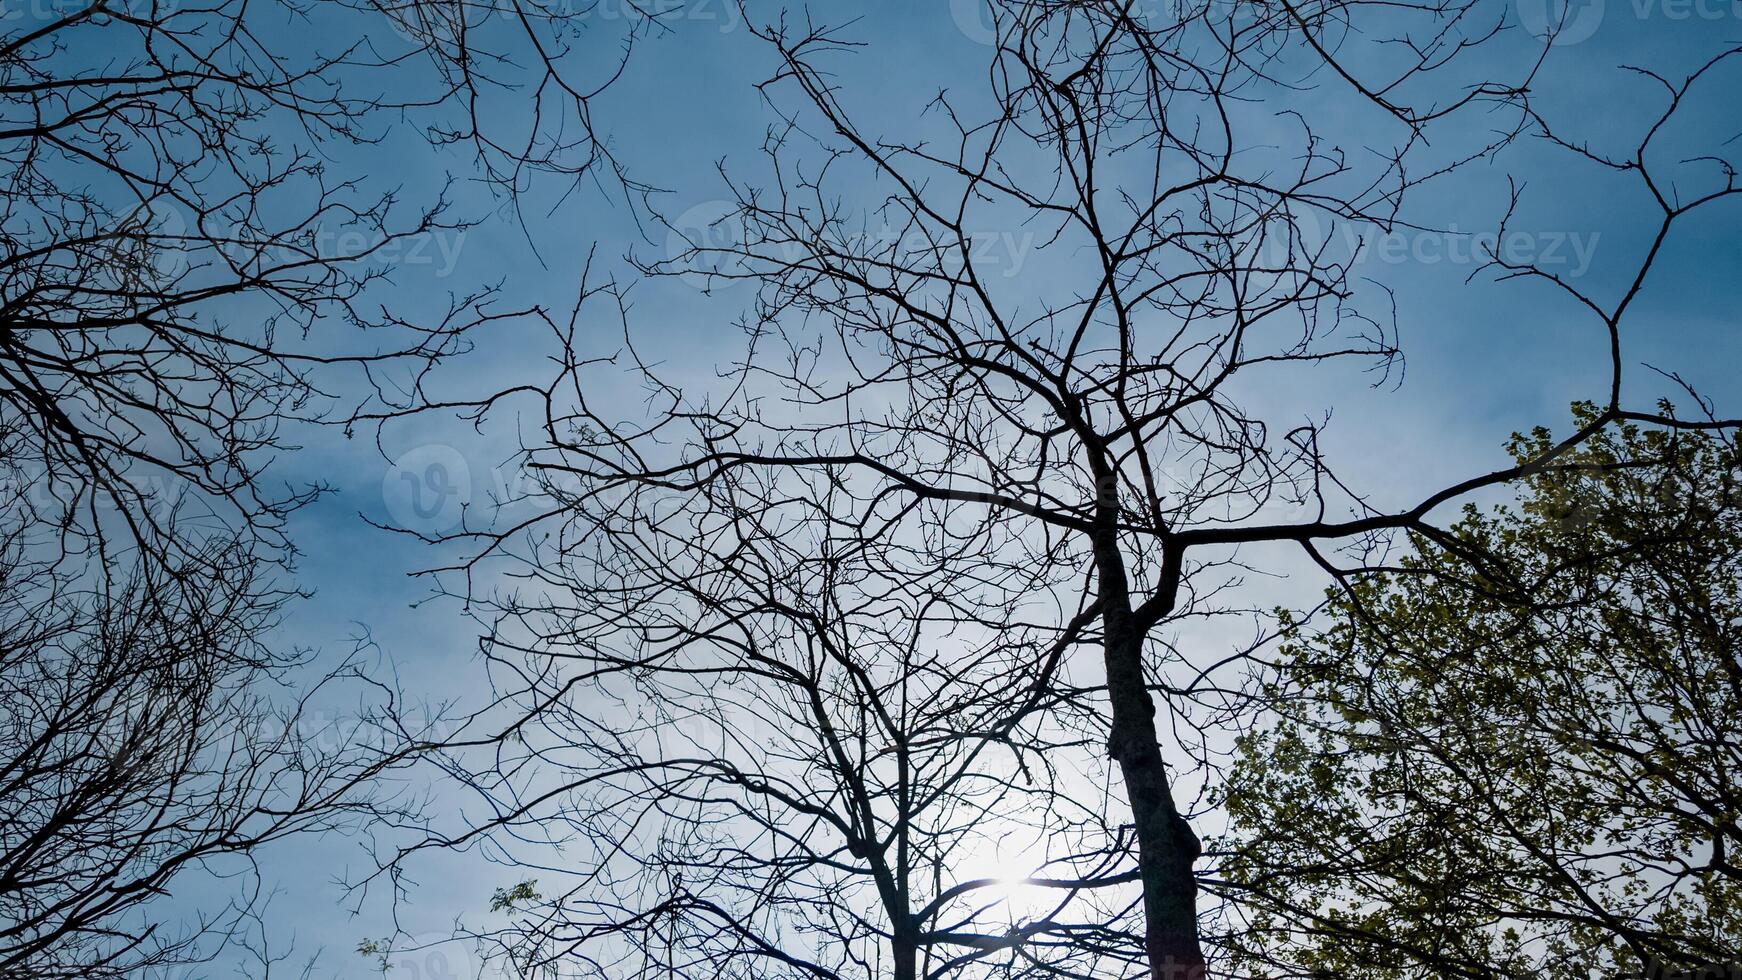 kaal boom takken aftekenen tegen een blauw lucht met vroeg voorjaar gebladerte opkomend, ideaal voor aarde dag en prieel dag concepten foto